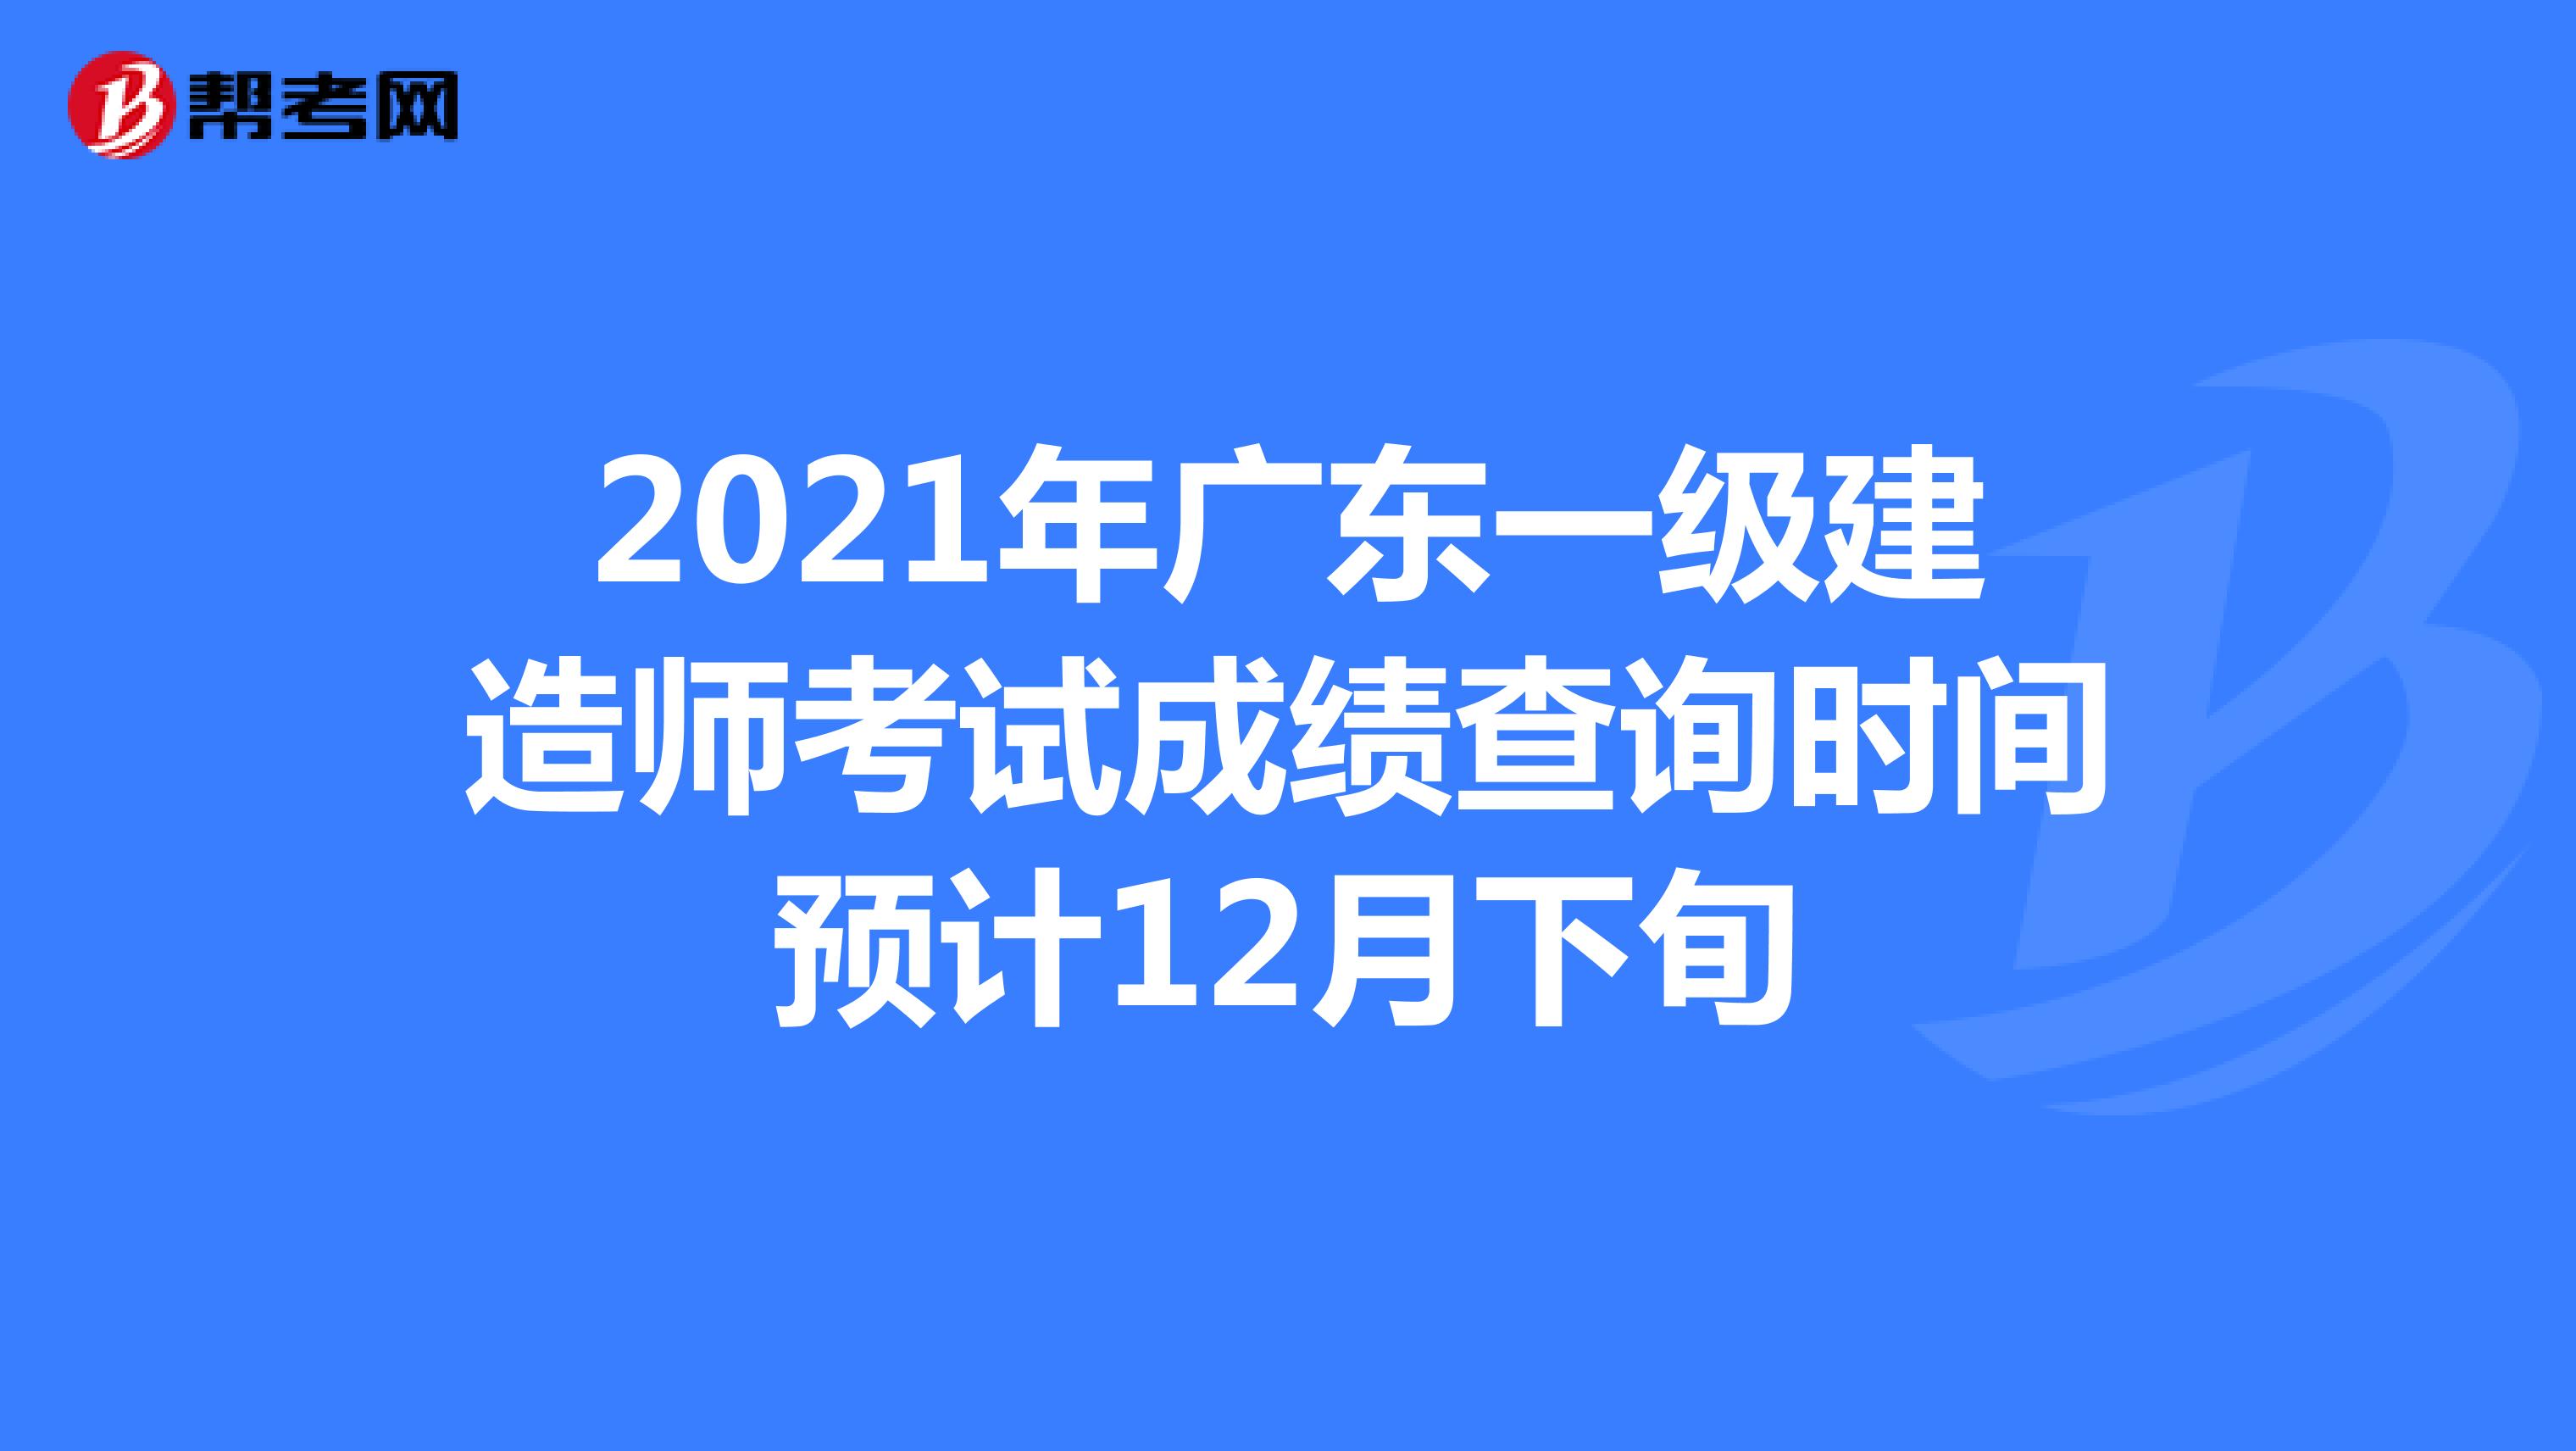 2021年广东一级建造师考试成绩查询时间预计12月下旬